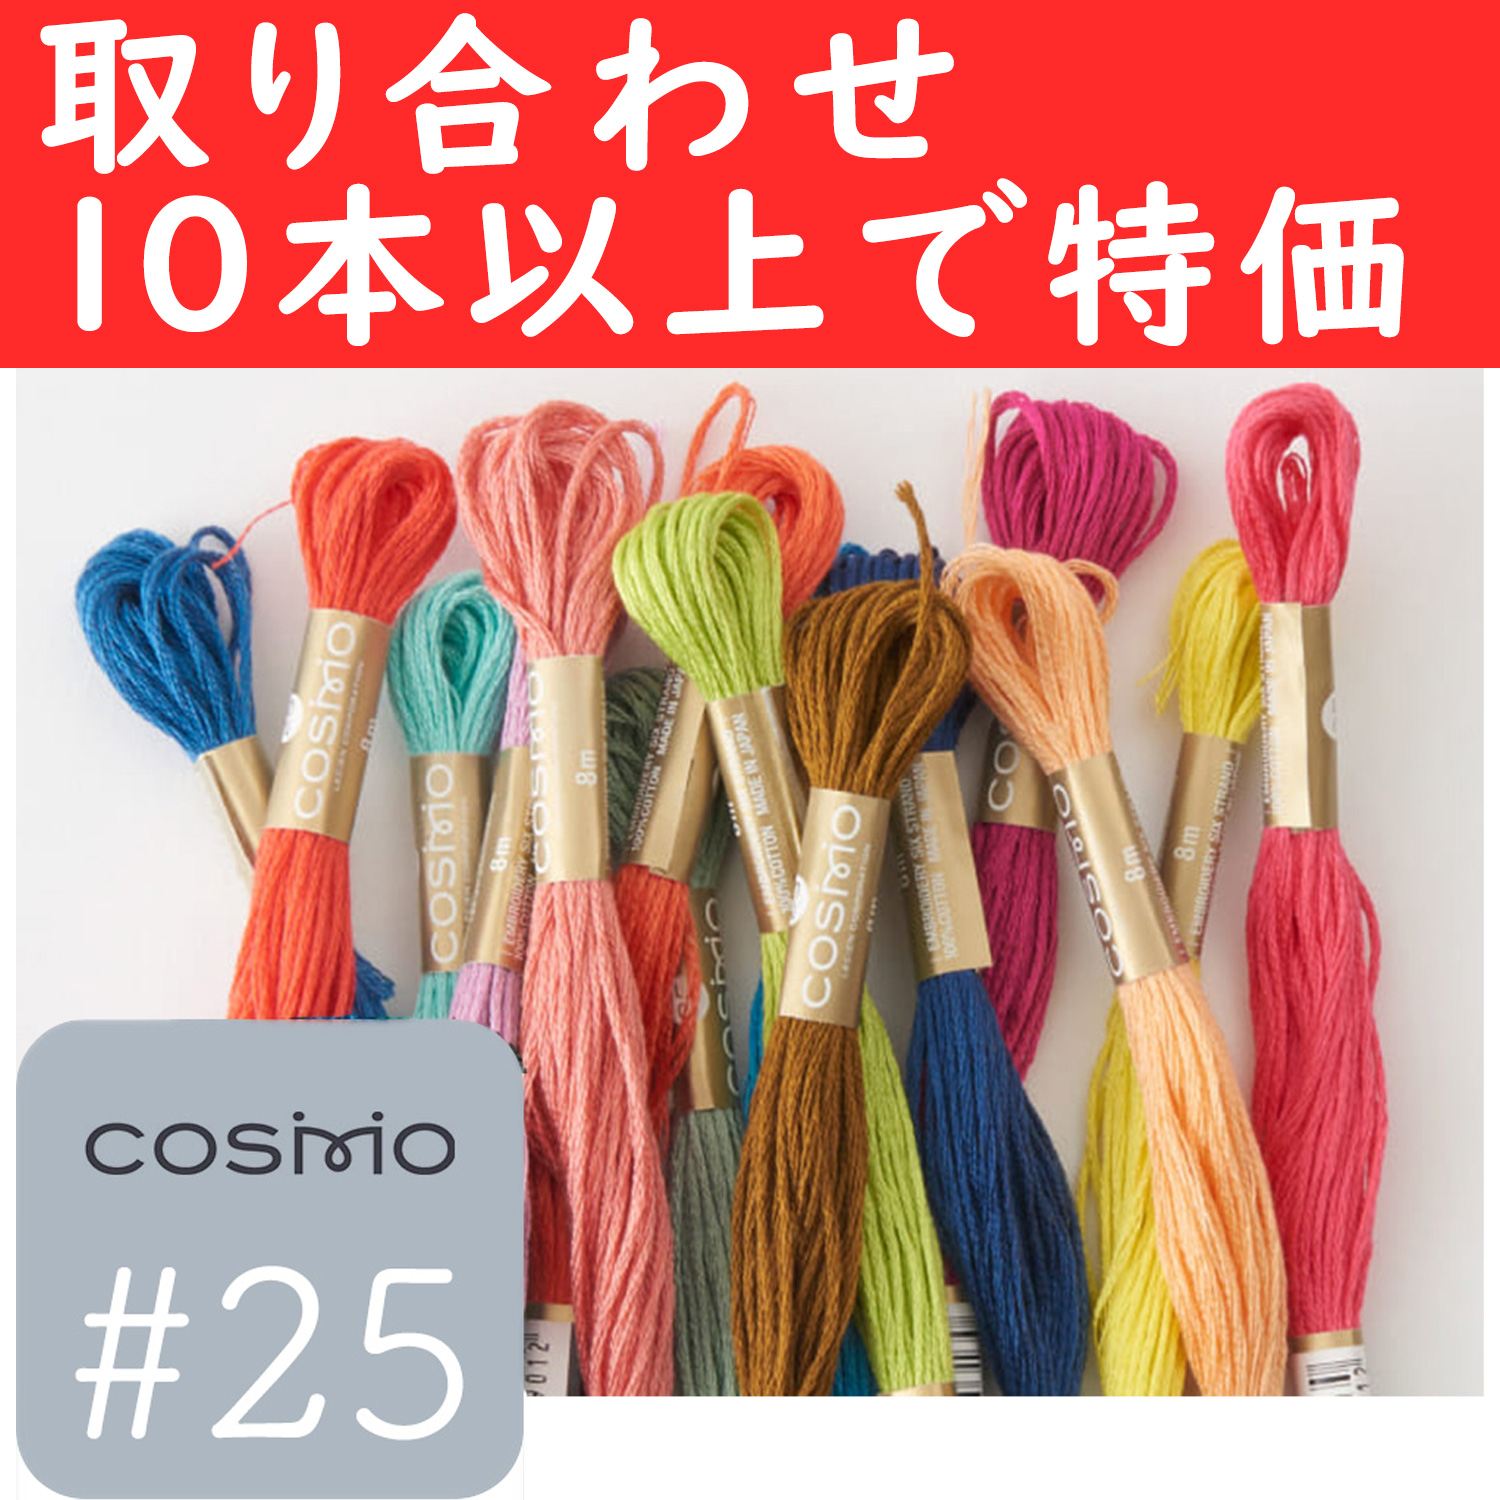 【4月12日まで】CS25-OVER10 コスモ刺しゅう糸 #25番取り合わせ10本以上で特価 (本)